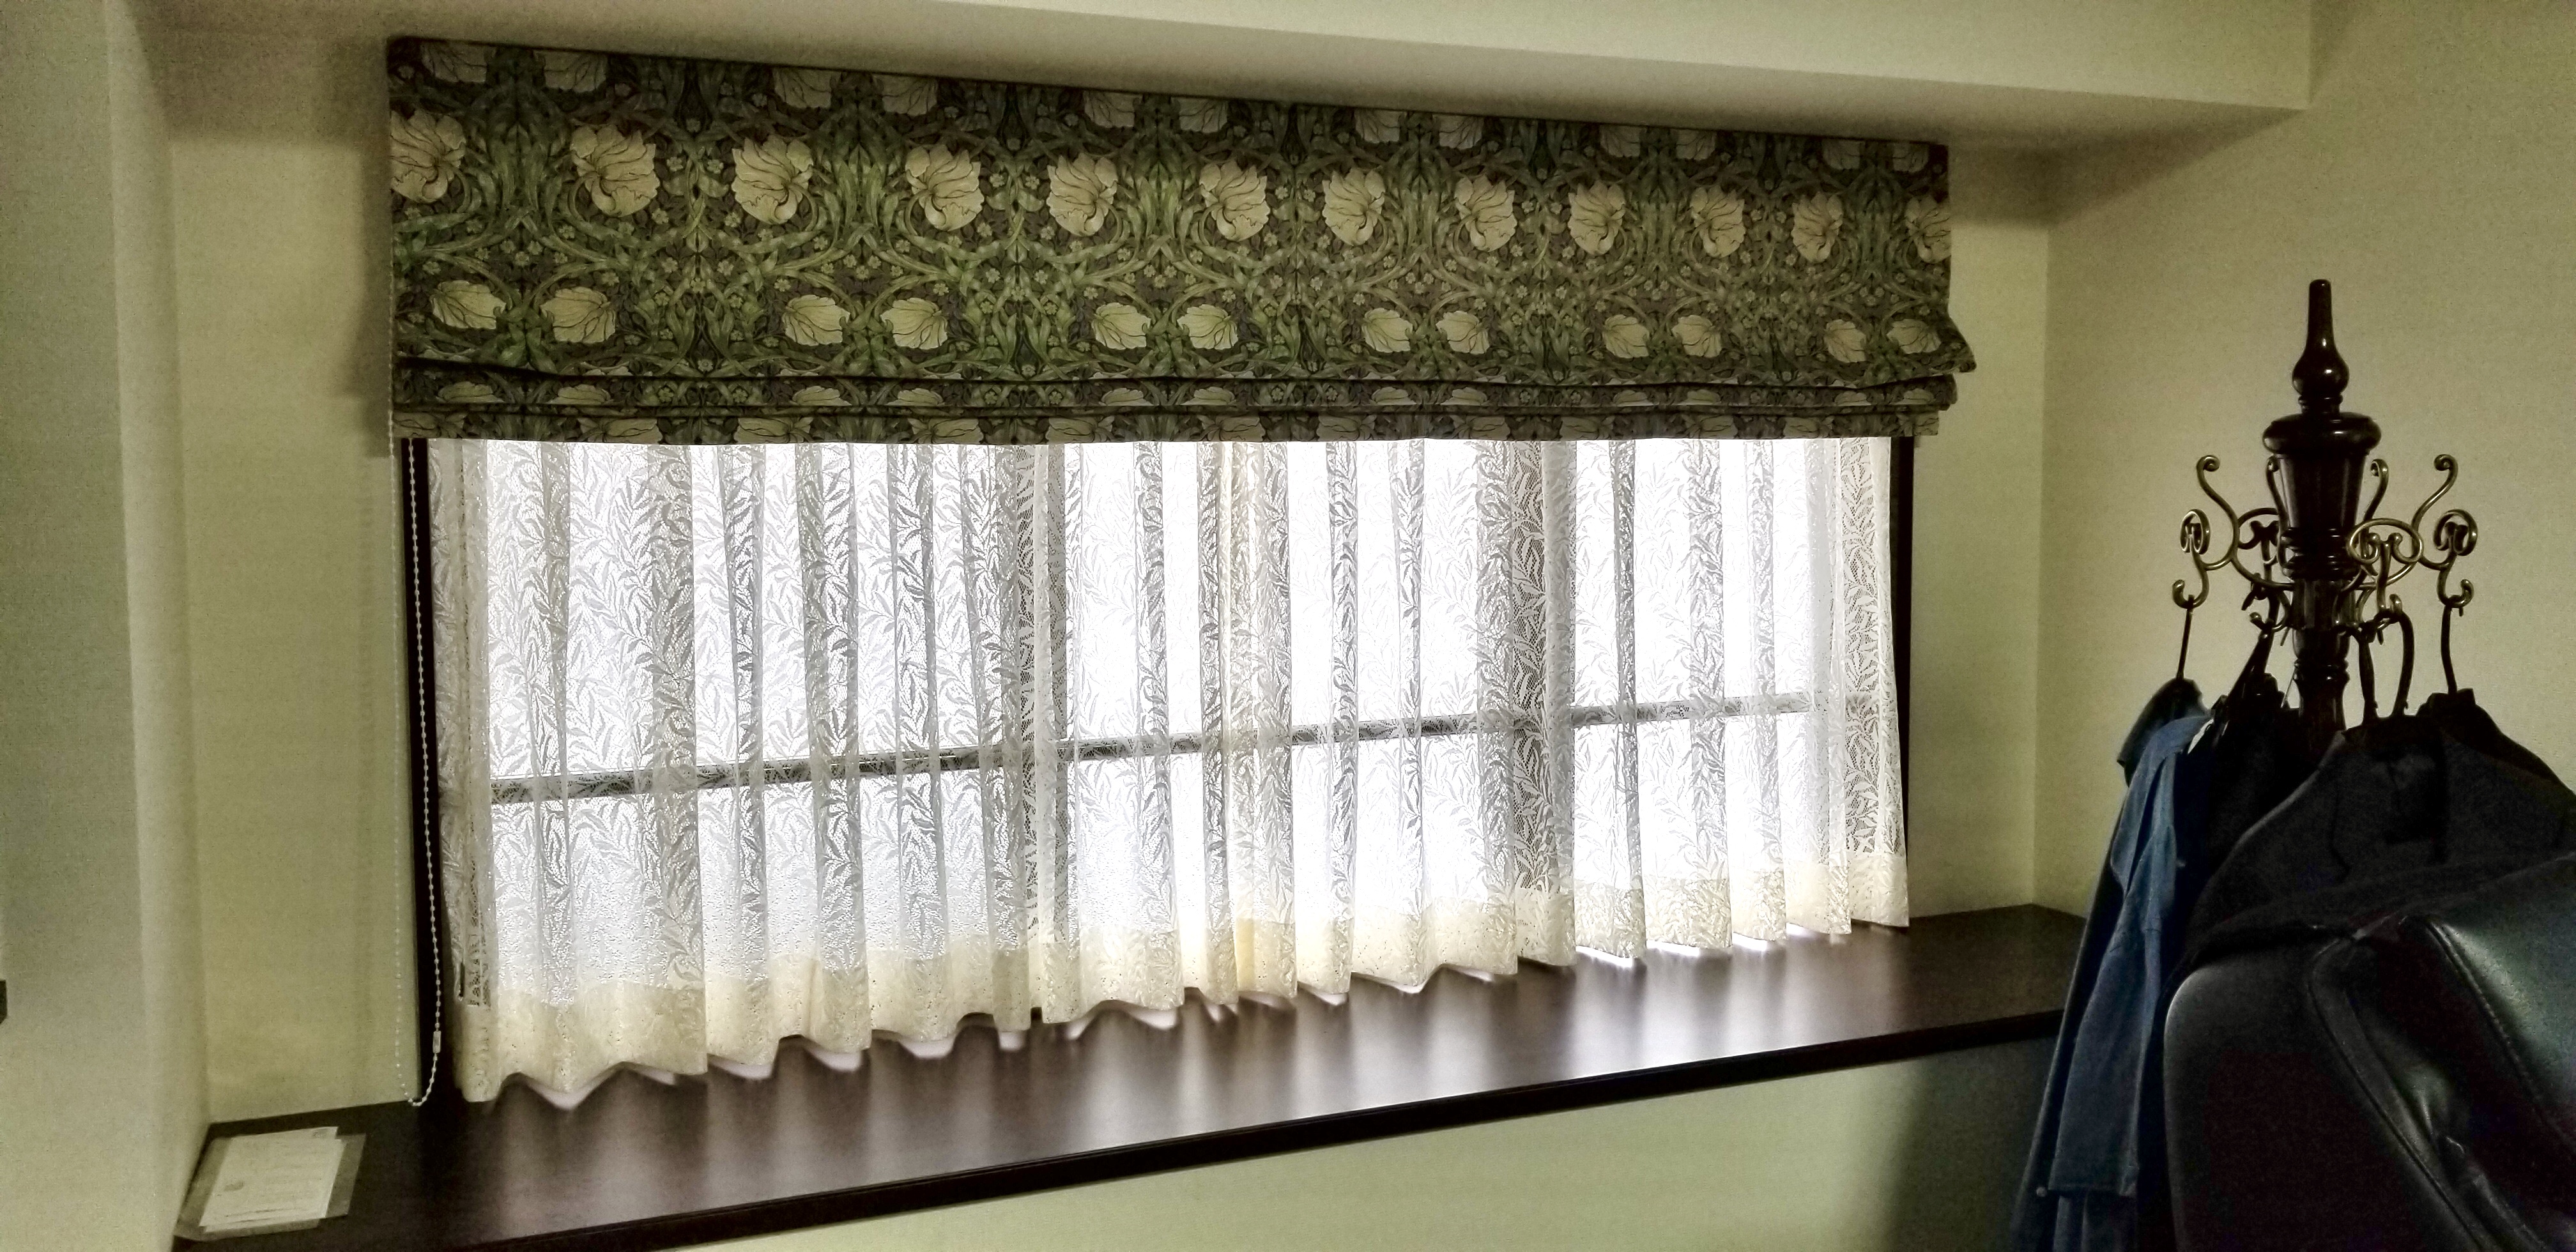 ウィリアムモリスのカーテン地を使用したプレーンシェードスタイルの窓辺。